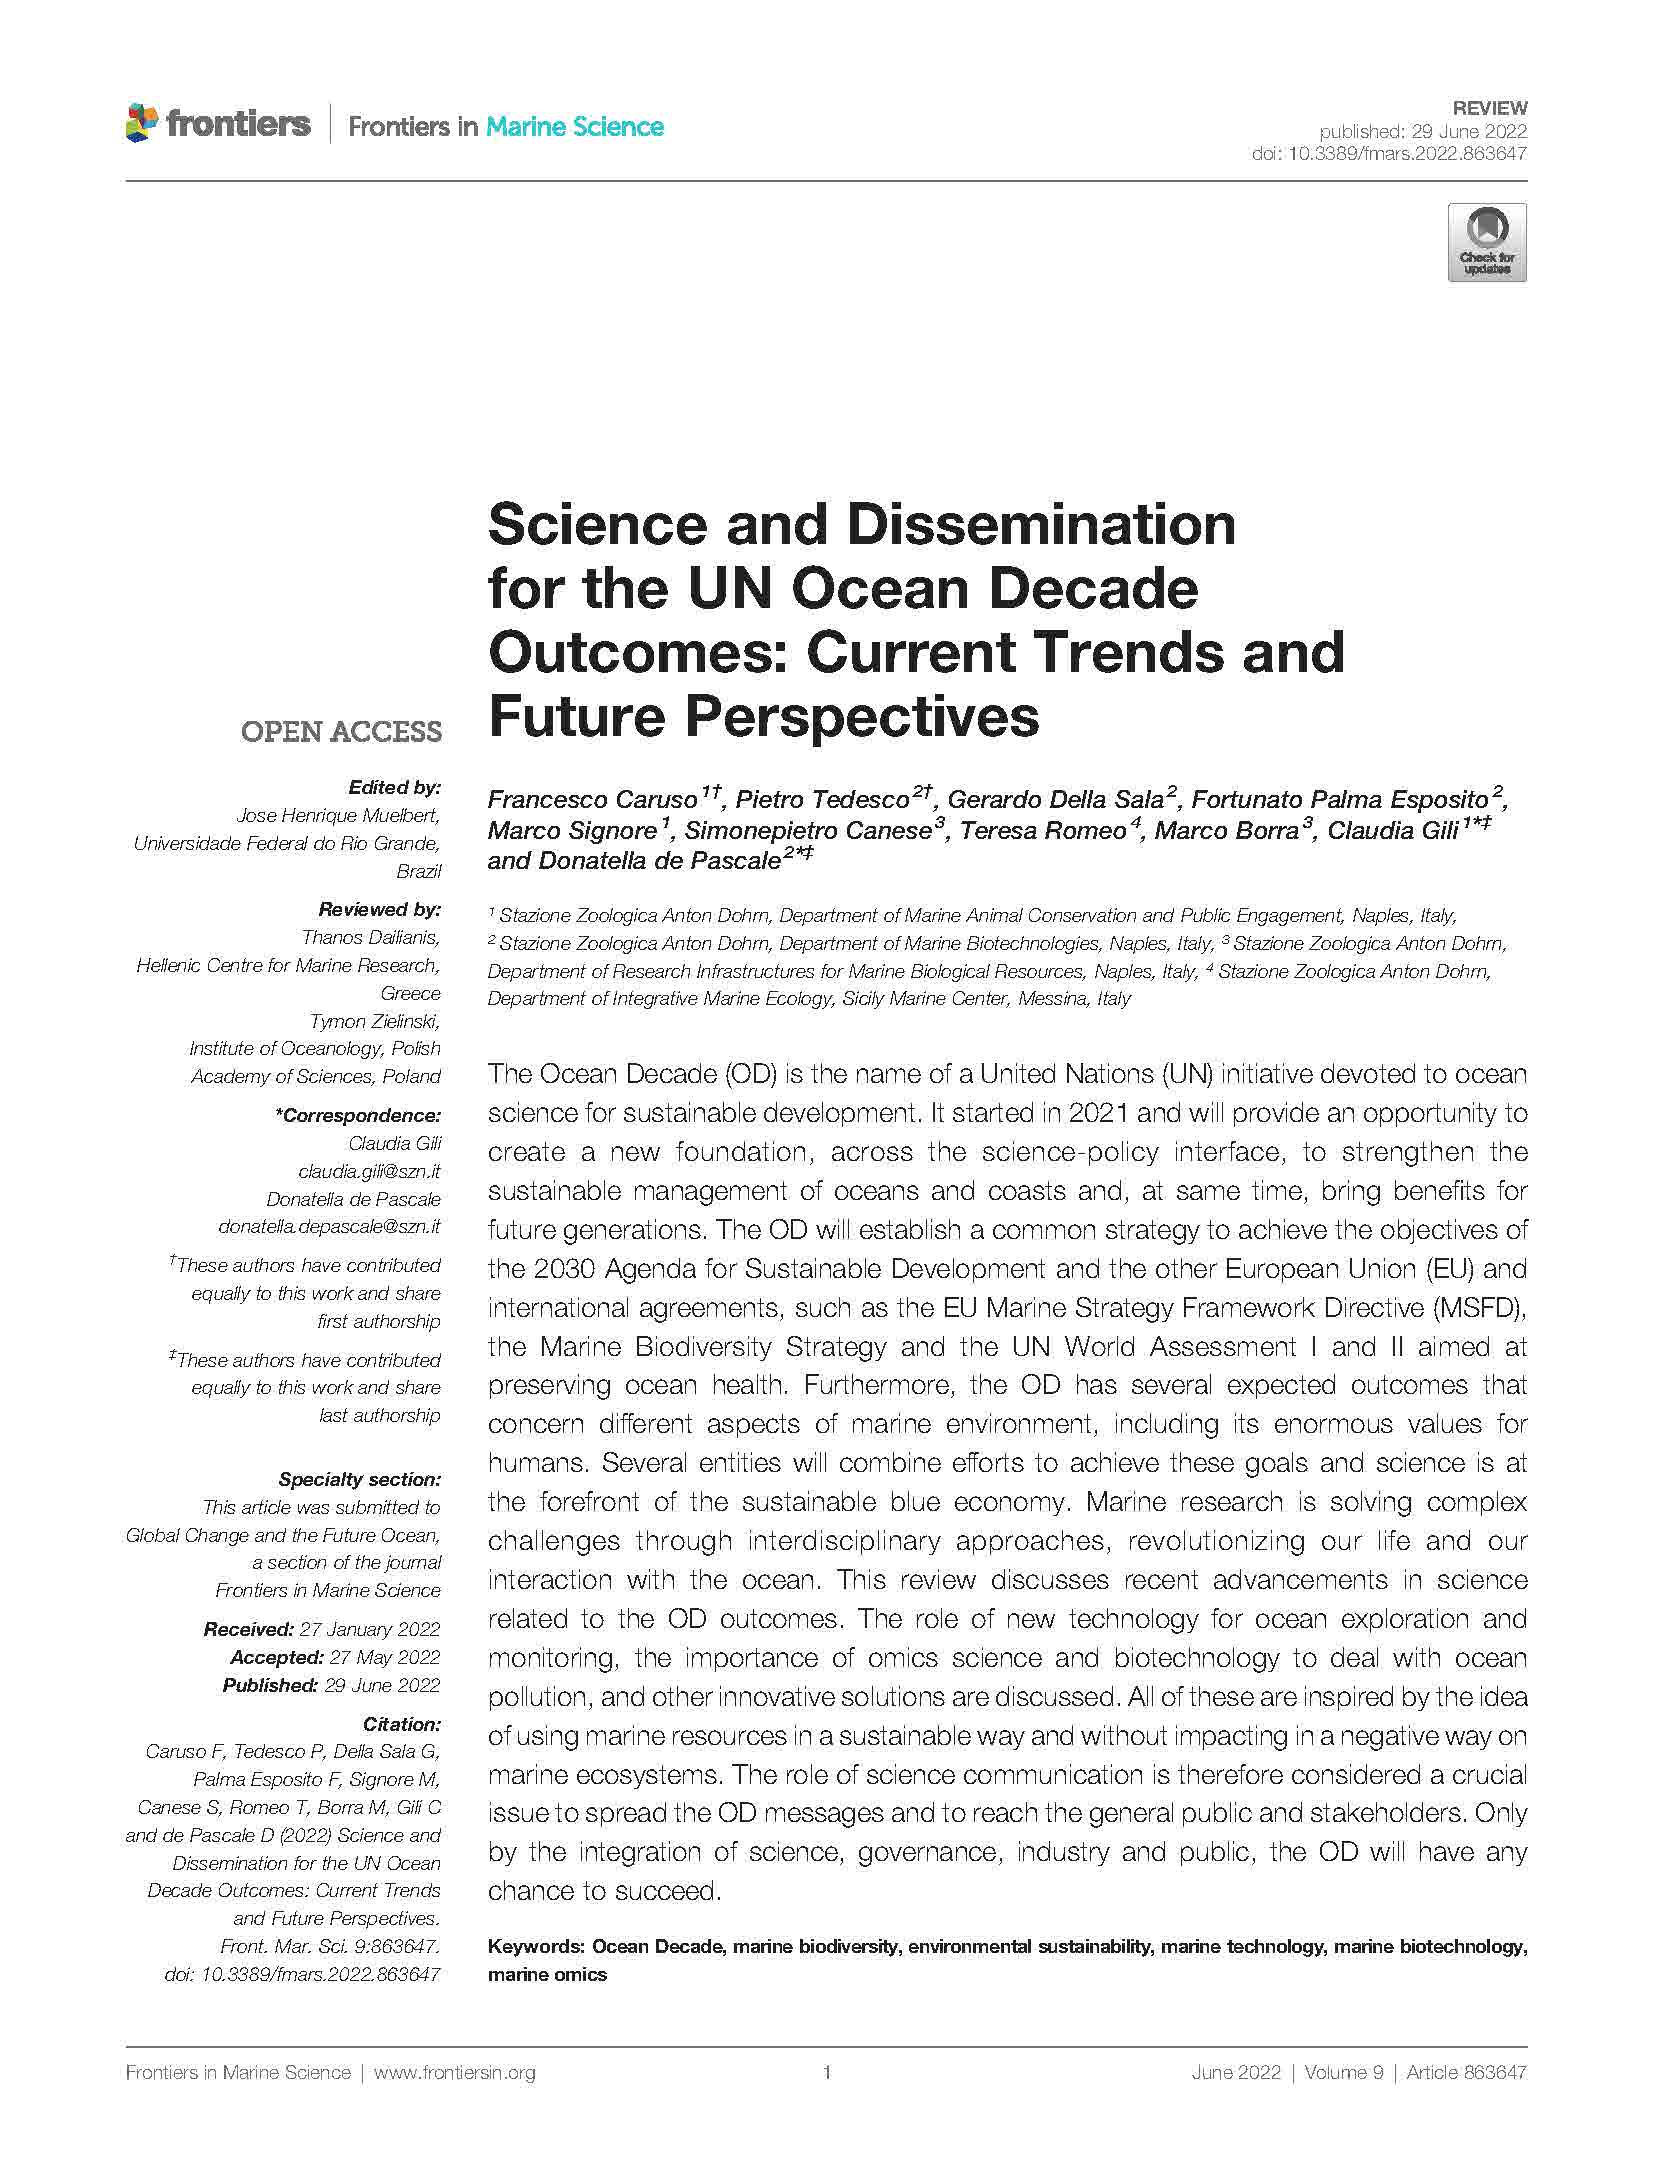 Caruso et al 2022 Frontiers Ocean Decade